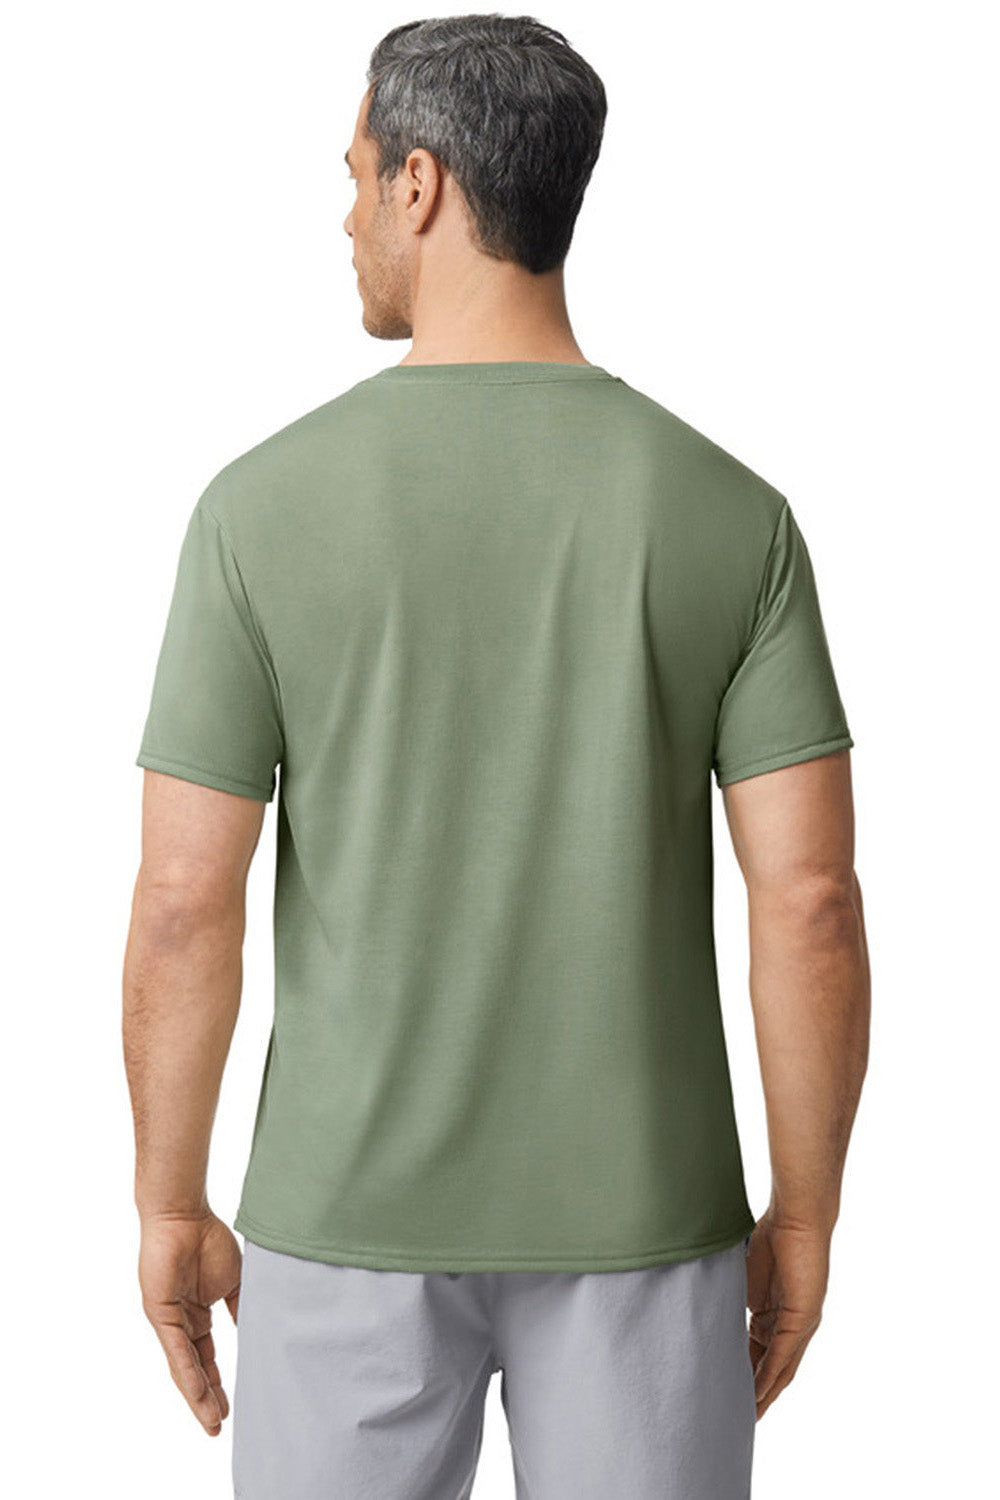 Gildan 42000/G420 Mens Performance Jersey Moisture Wicking Short Sleeve Crewneck T-Shirt Sage Green Back